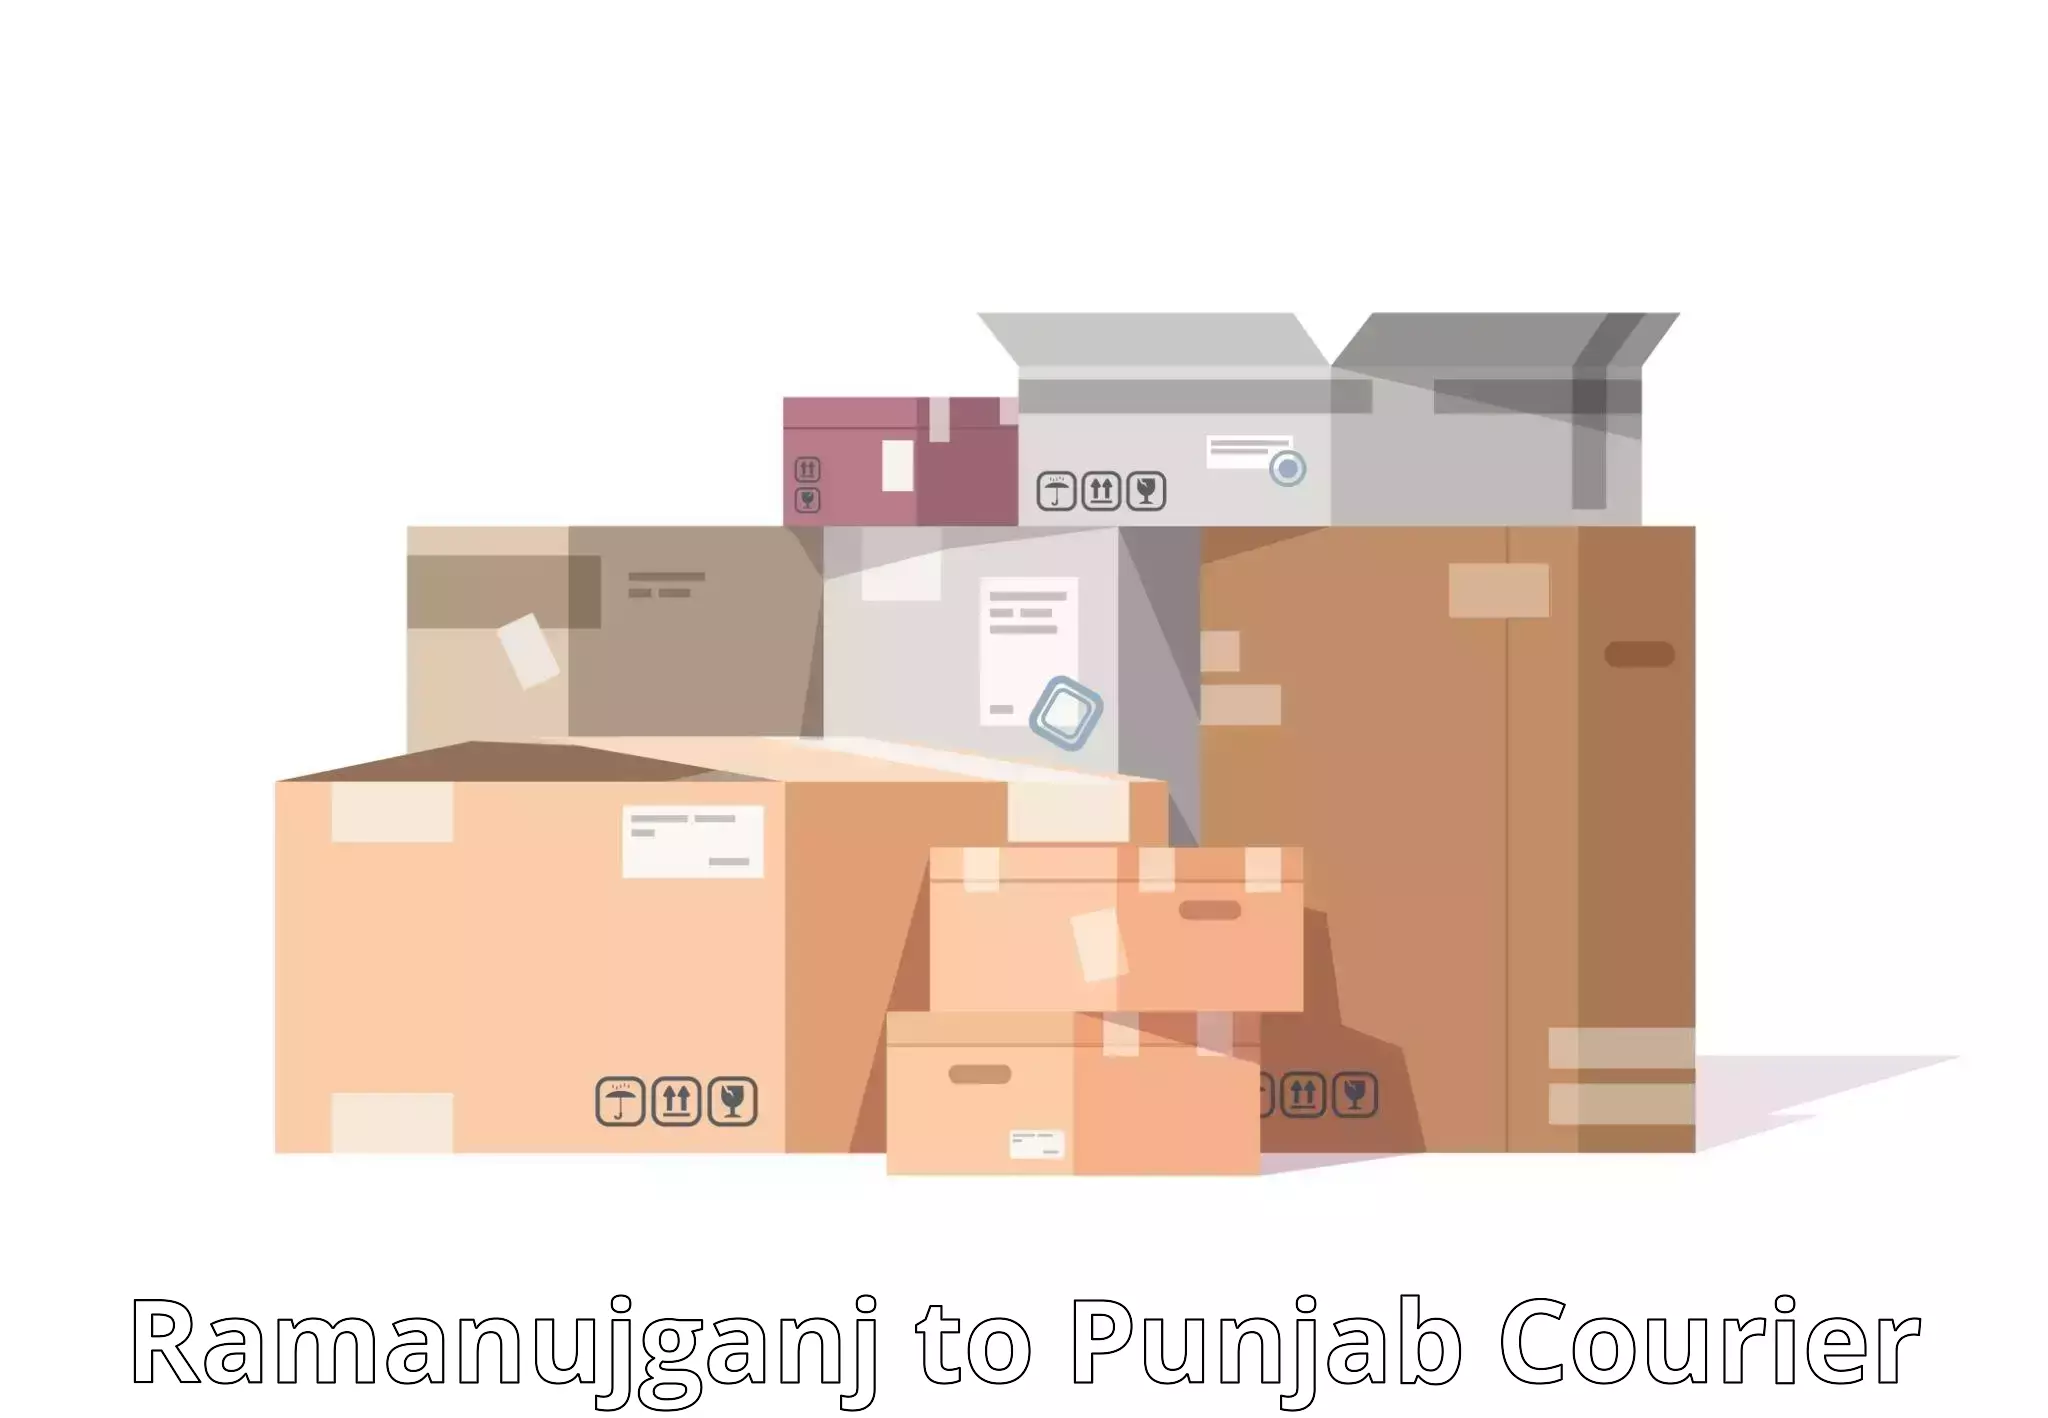 Individual parcel service Ramanujganj to Mandi Gobindgarh